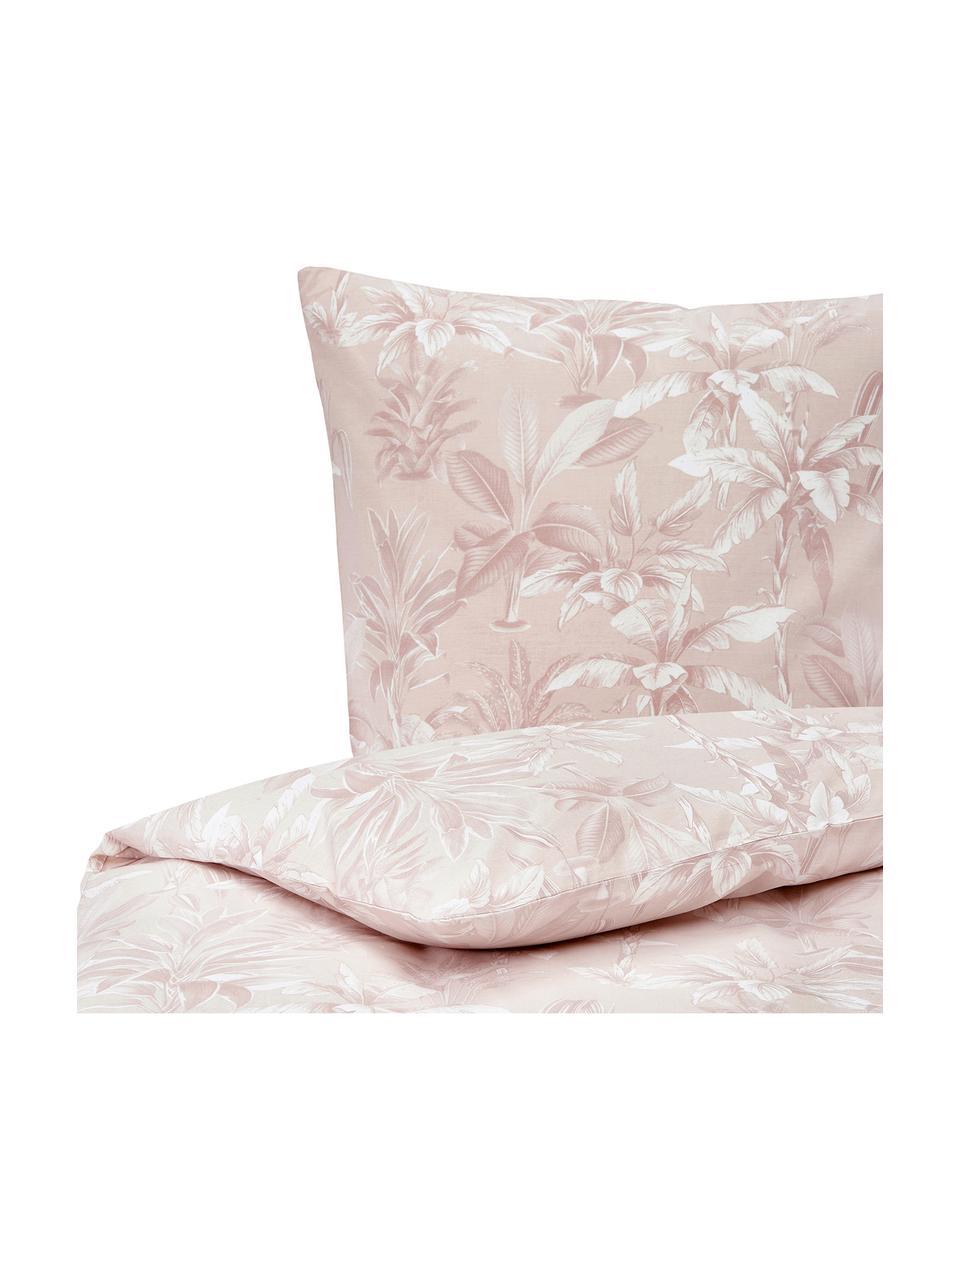 Bavlnená posteľná bielizeň Shanida, Bledoružová, krémovobiela, 135 x 200 cm + 1 vankúš 80 x 80 cm